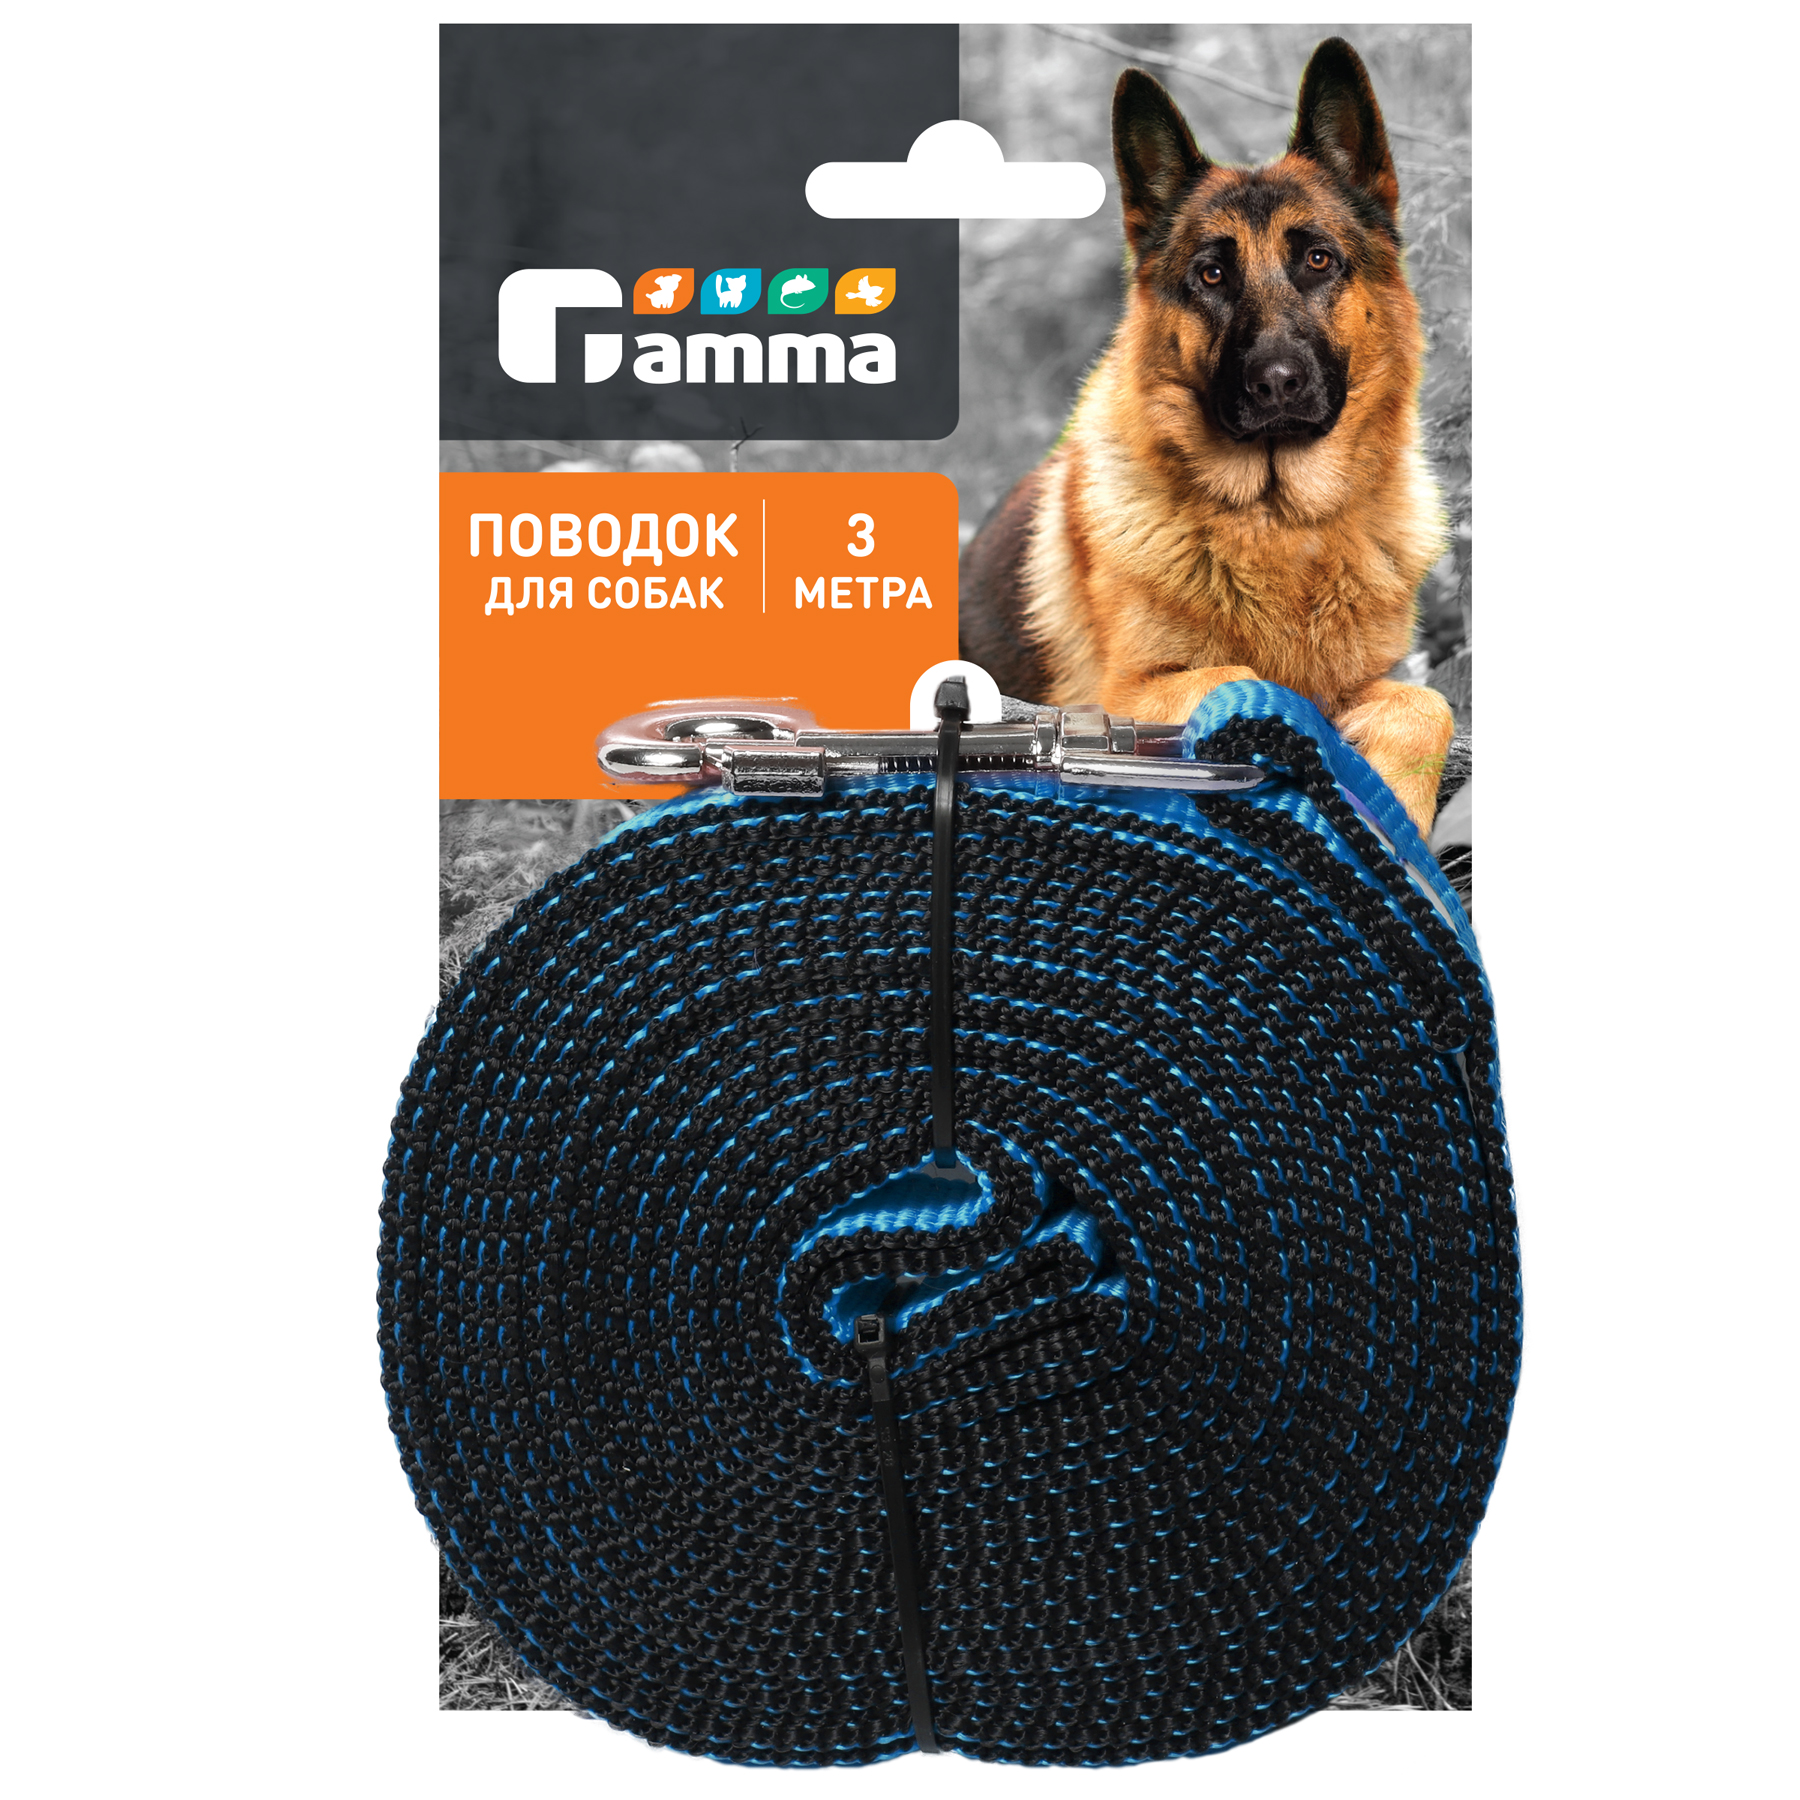 Поводок для собак Gamma 3м*0.3см*2.5см 11012005 - фото 2